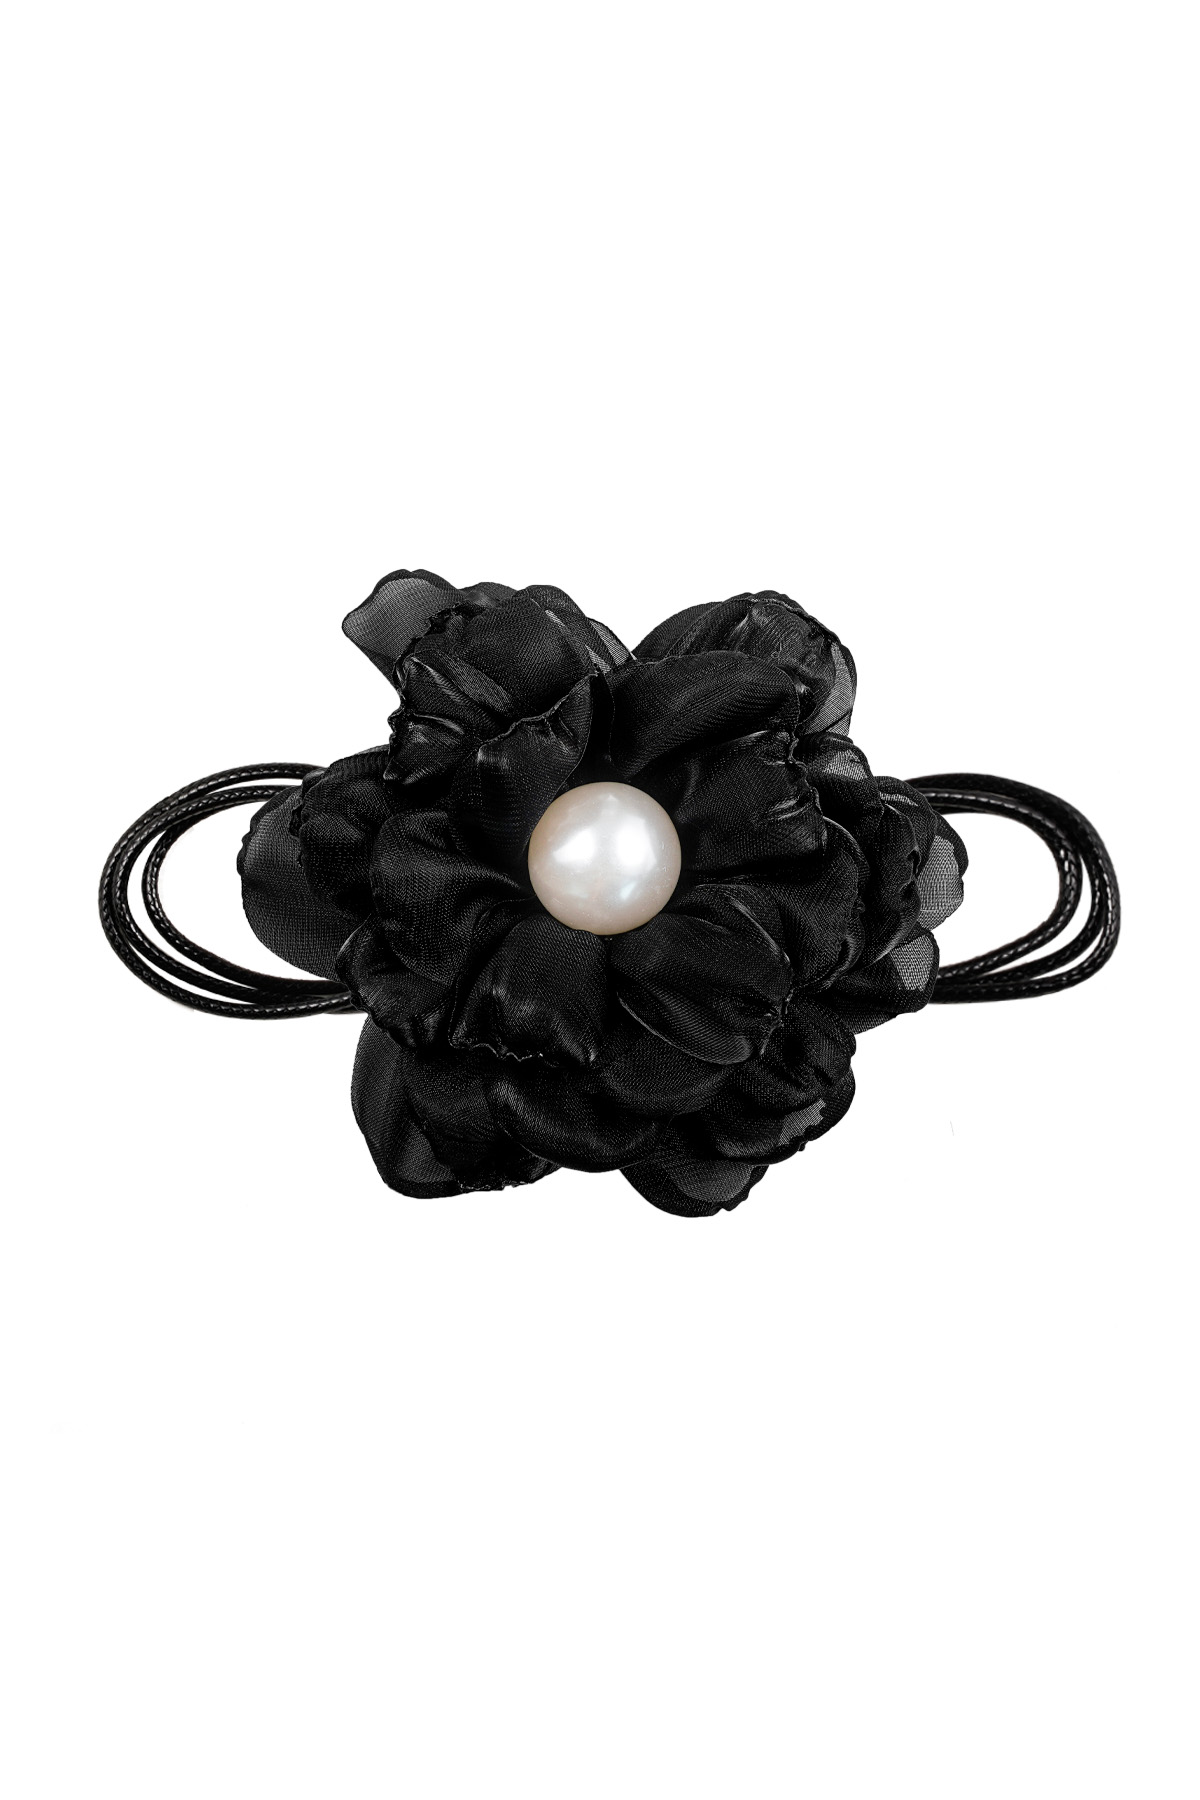 Cadena de cuerda con flor - negra h5 